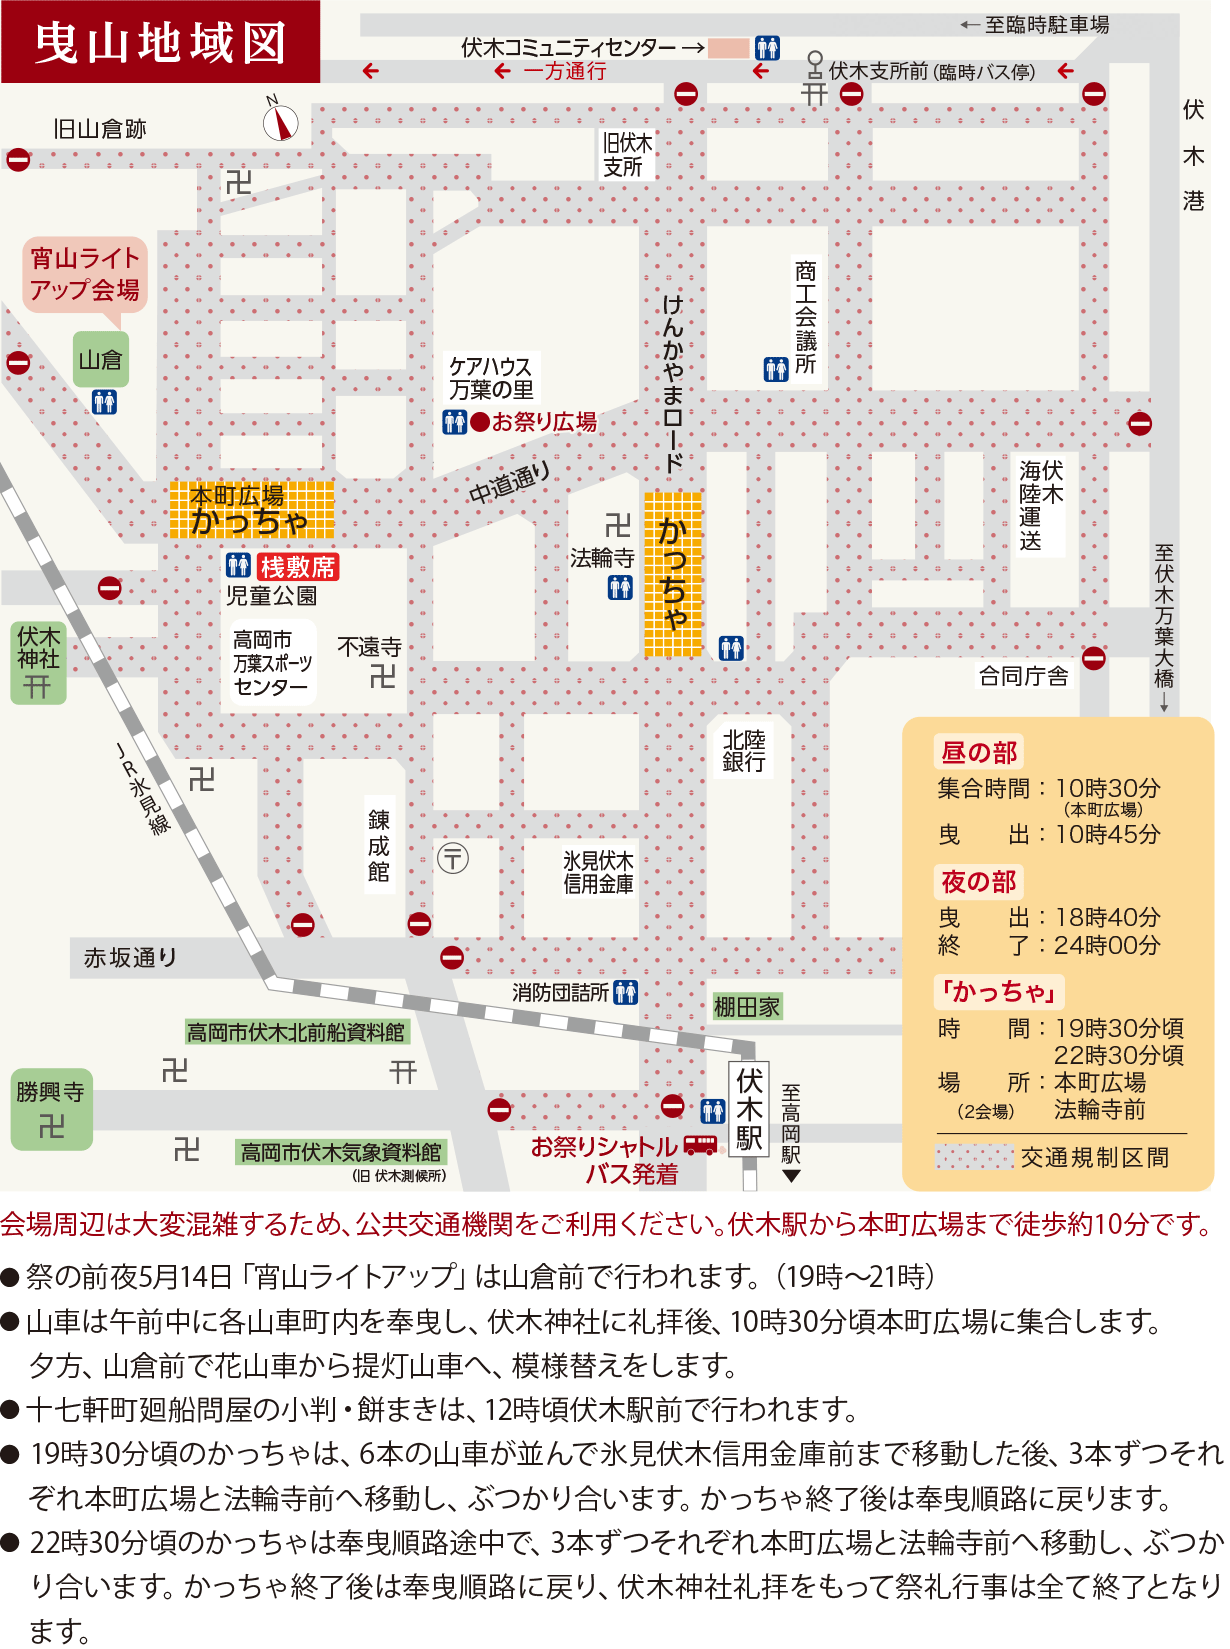 伏木神社例大祭・伏木けんか山の会場地図